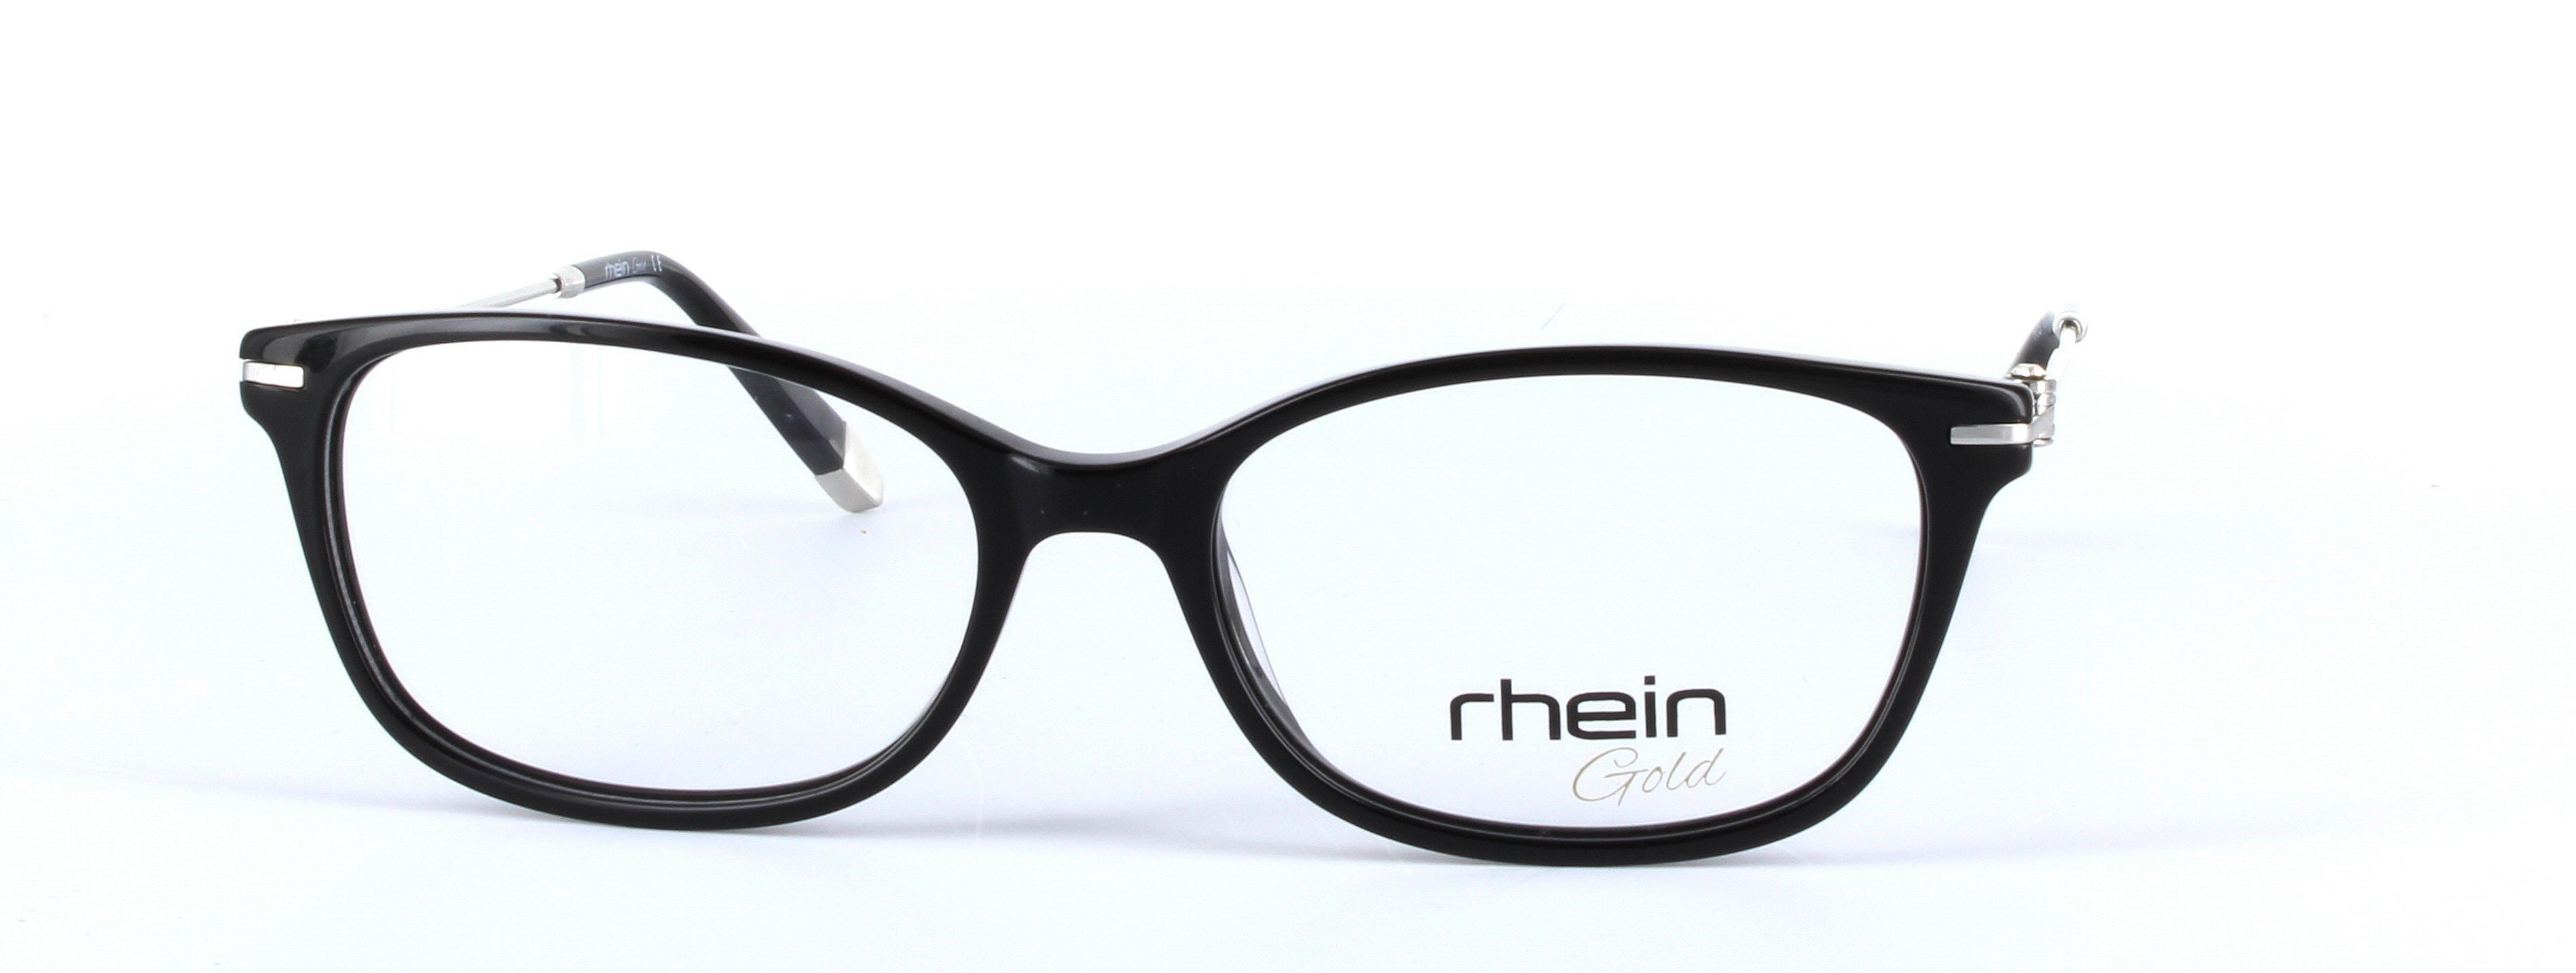 Locarno Black Full Rim Oval Plastic Glasses - Image View 5